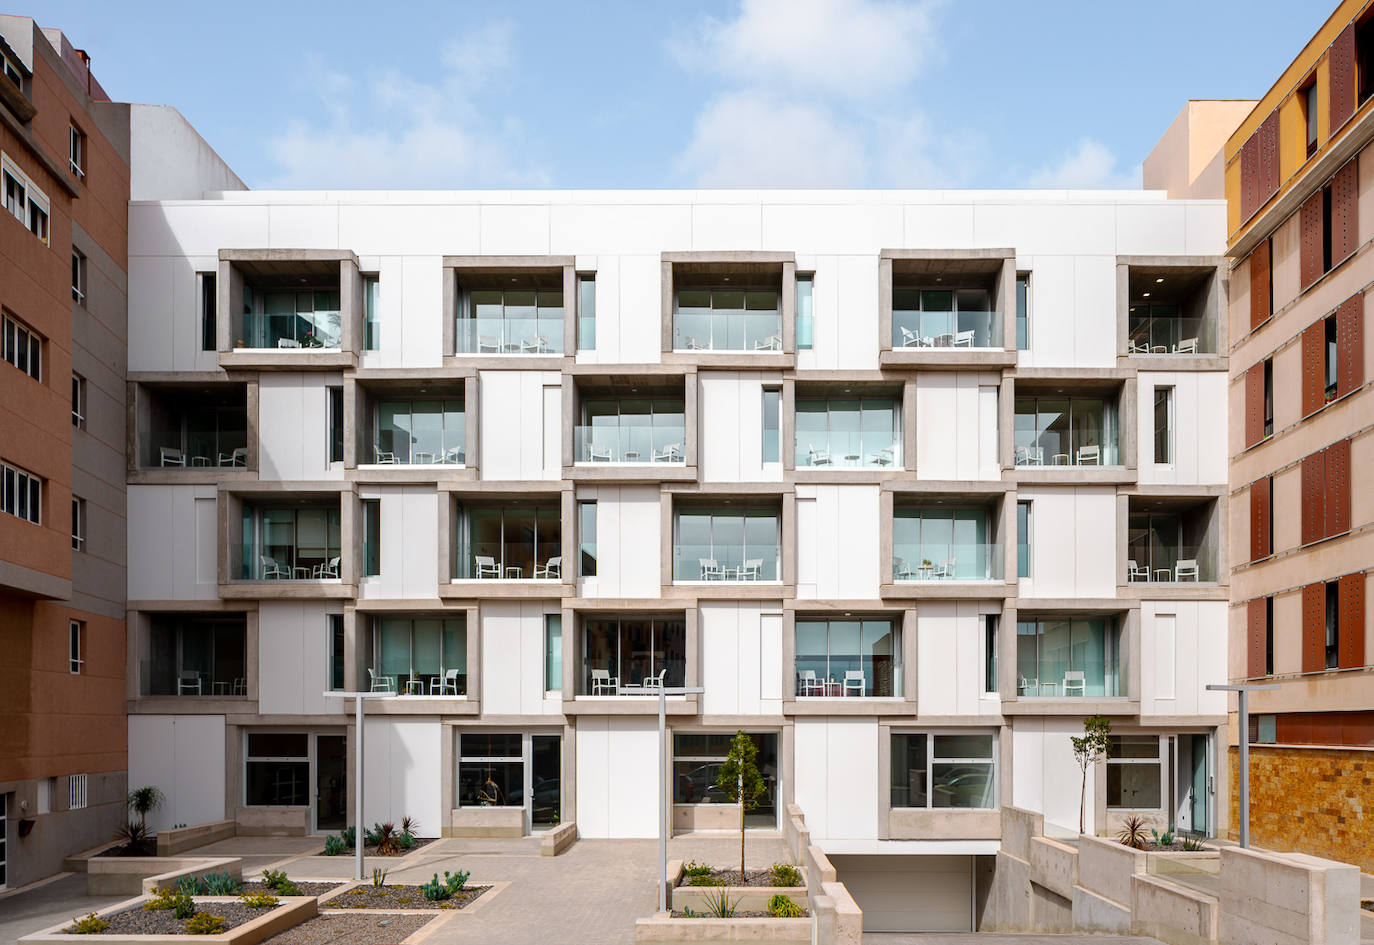 Edificios Singulares recibe el reconocimiento del Colegio de Arquitectos por su residencial Lola Massieu